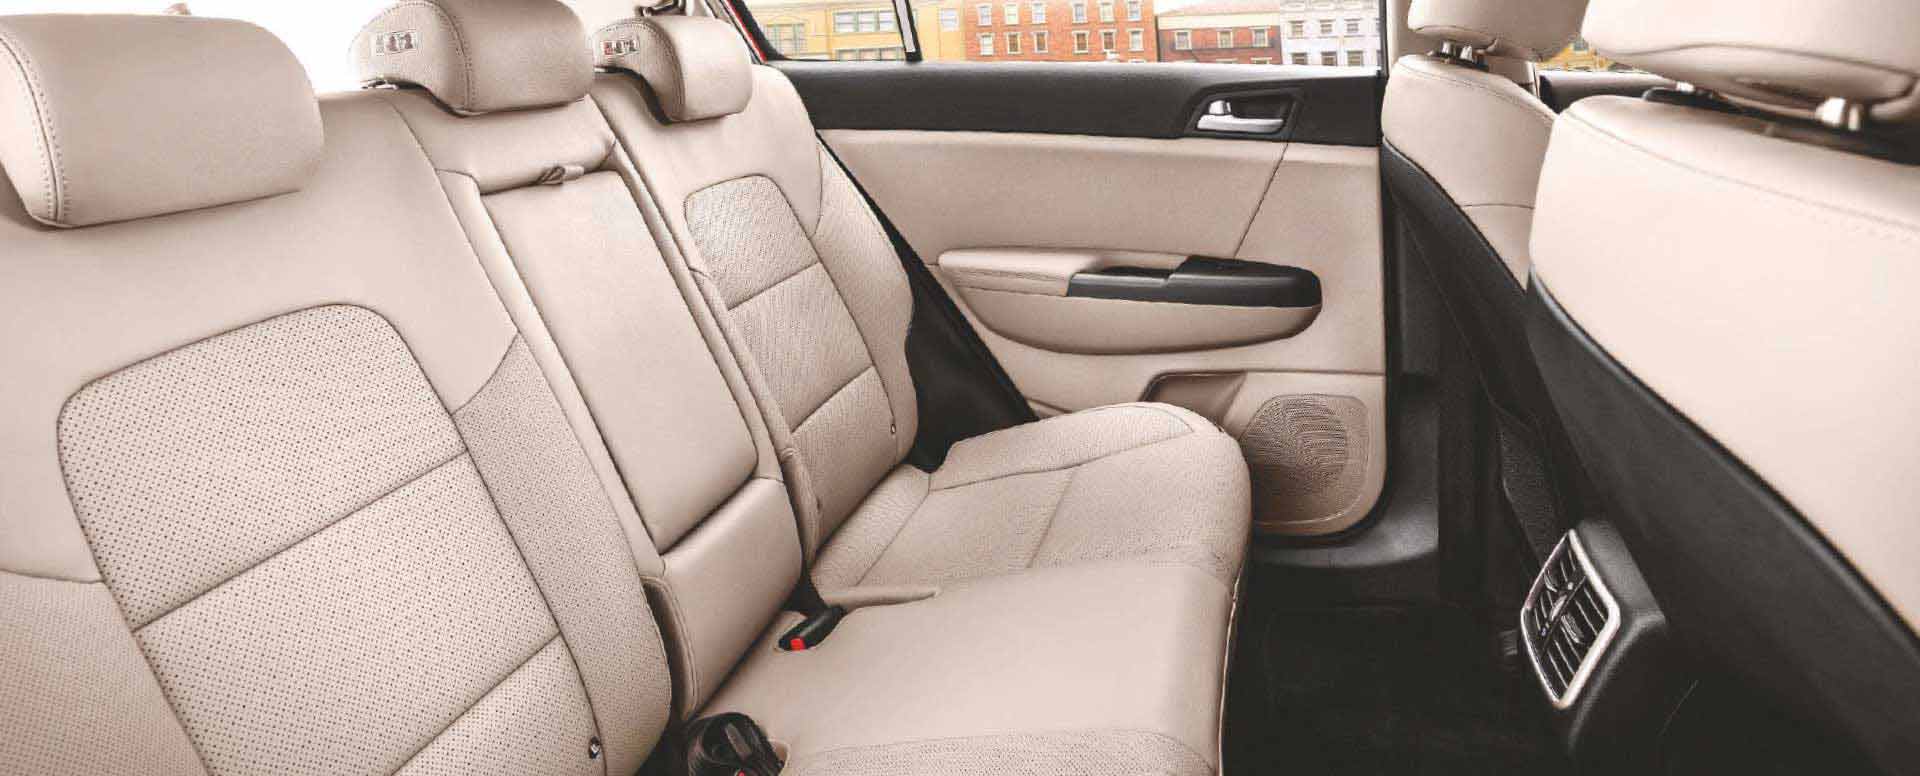 Kia Sportage Comfort feature